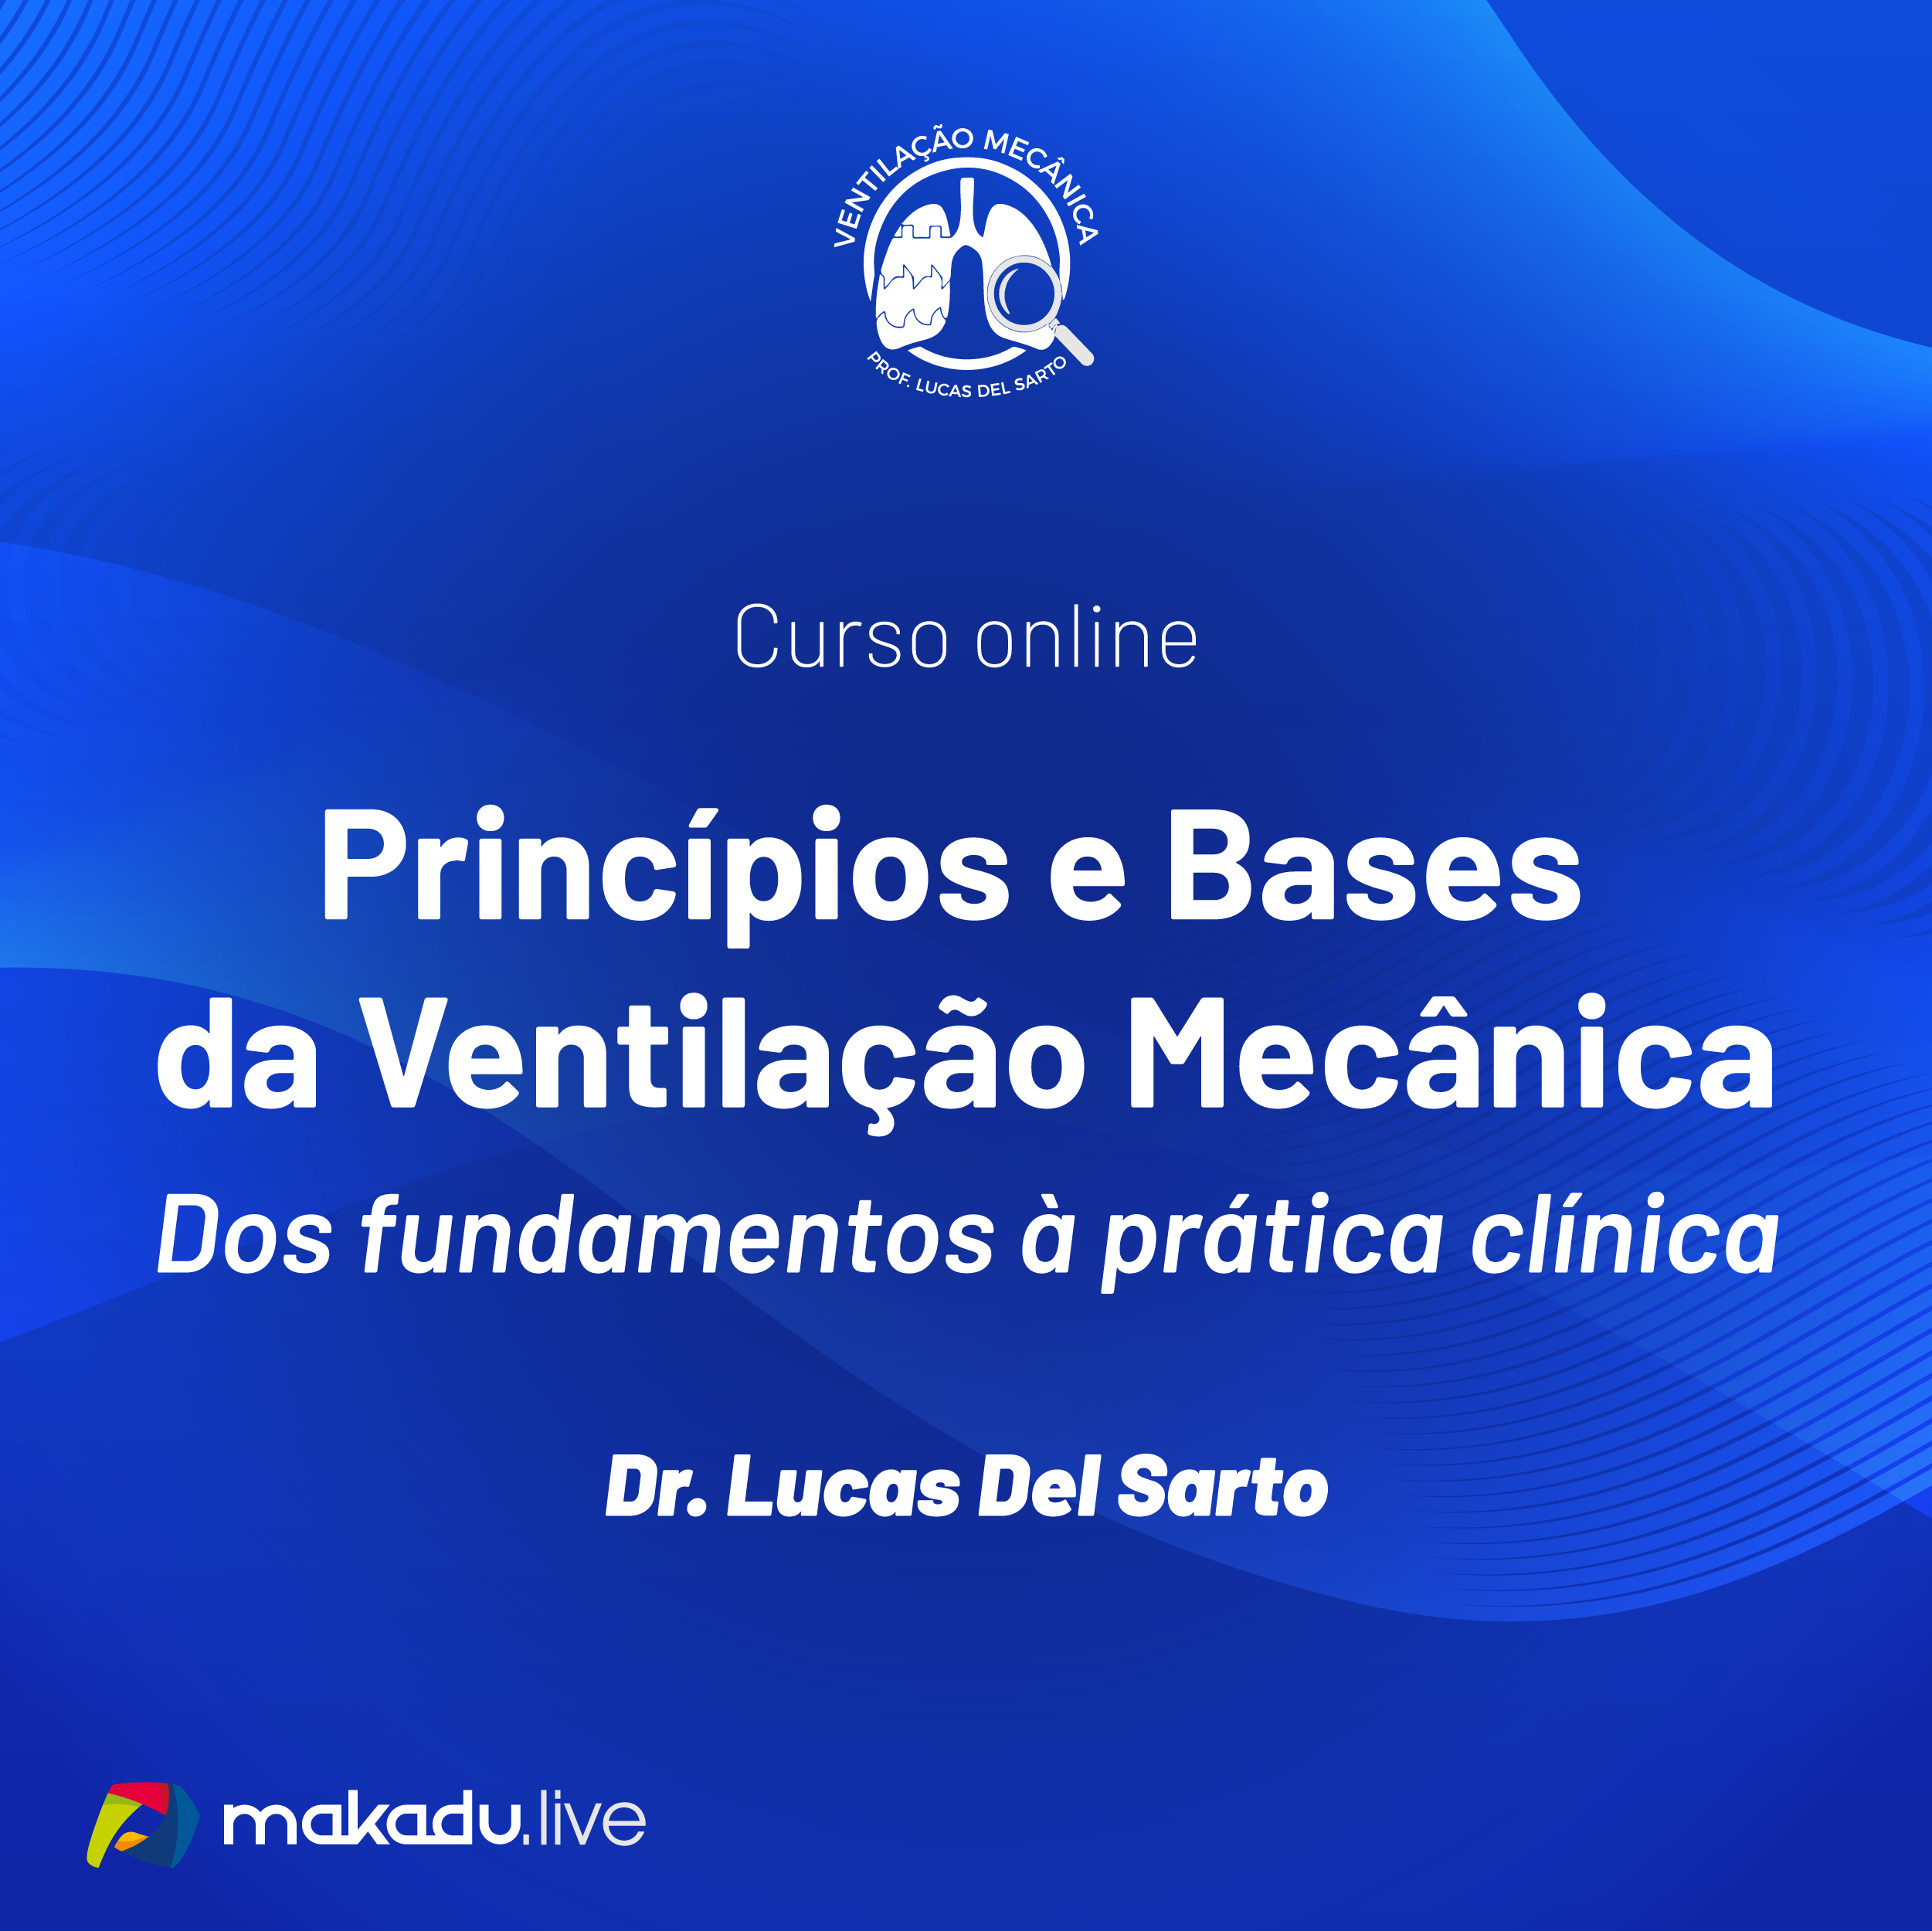 Lucas Principios E Bases Da Ventilacao Mecanica Whats Redes